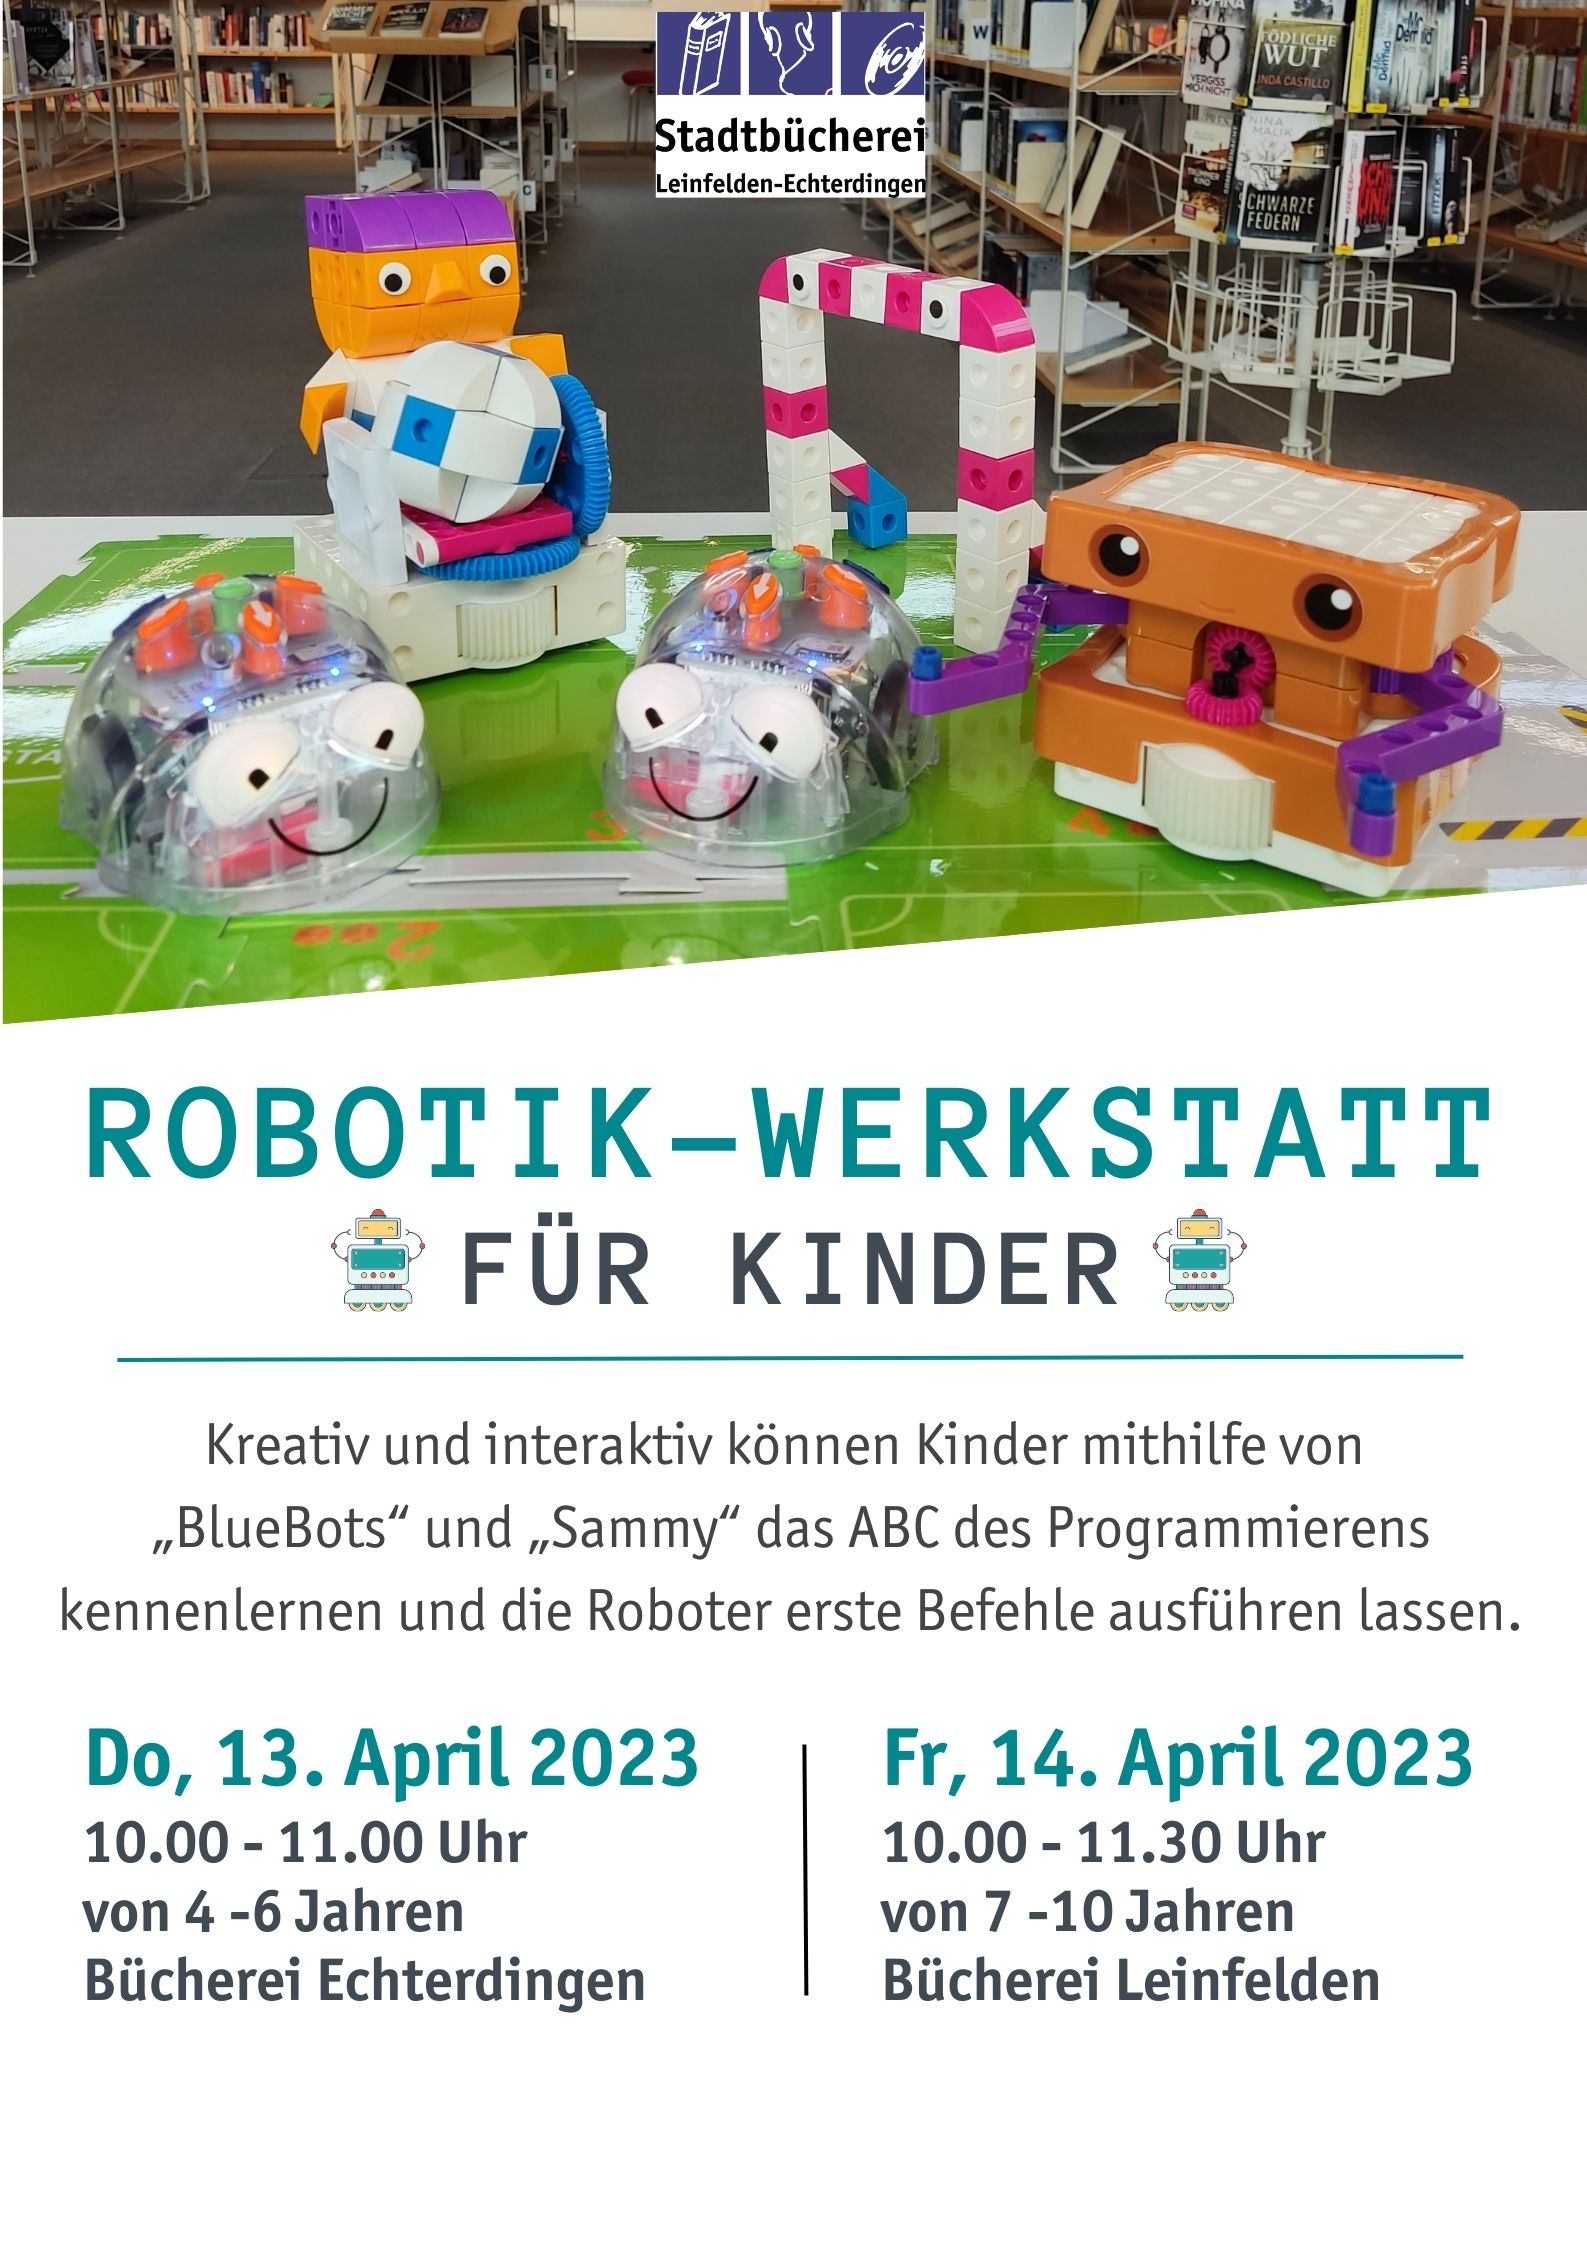 Robotik-Werkstatt für Kinder von 7 bis 10 Jahren